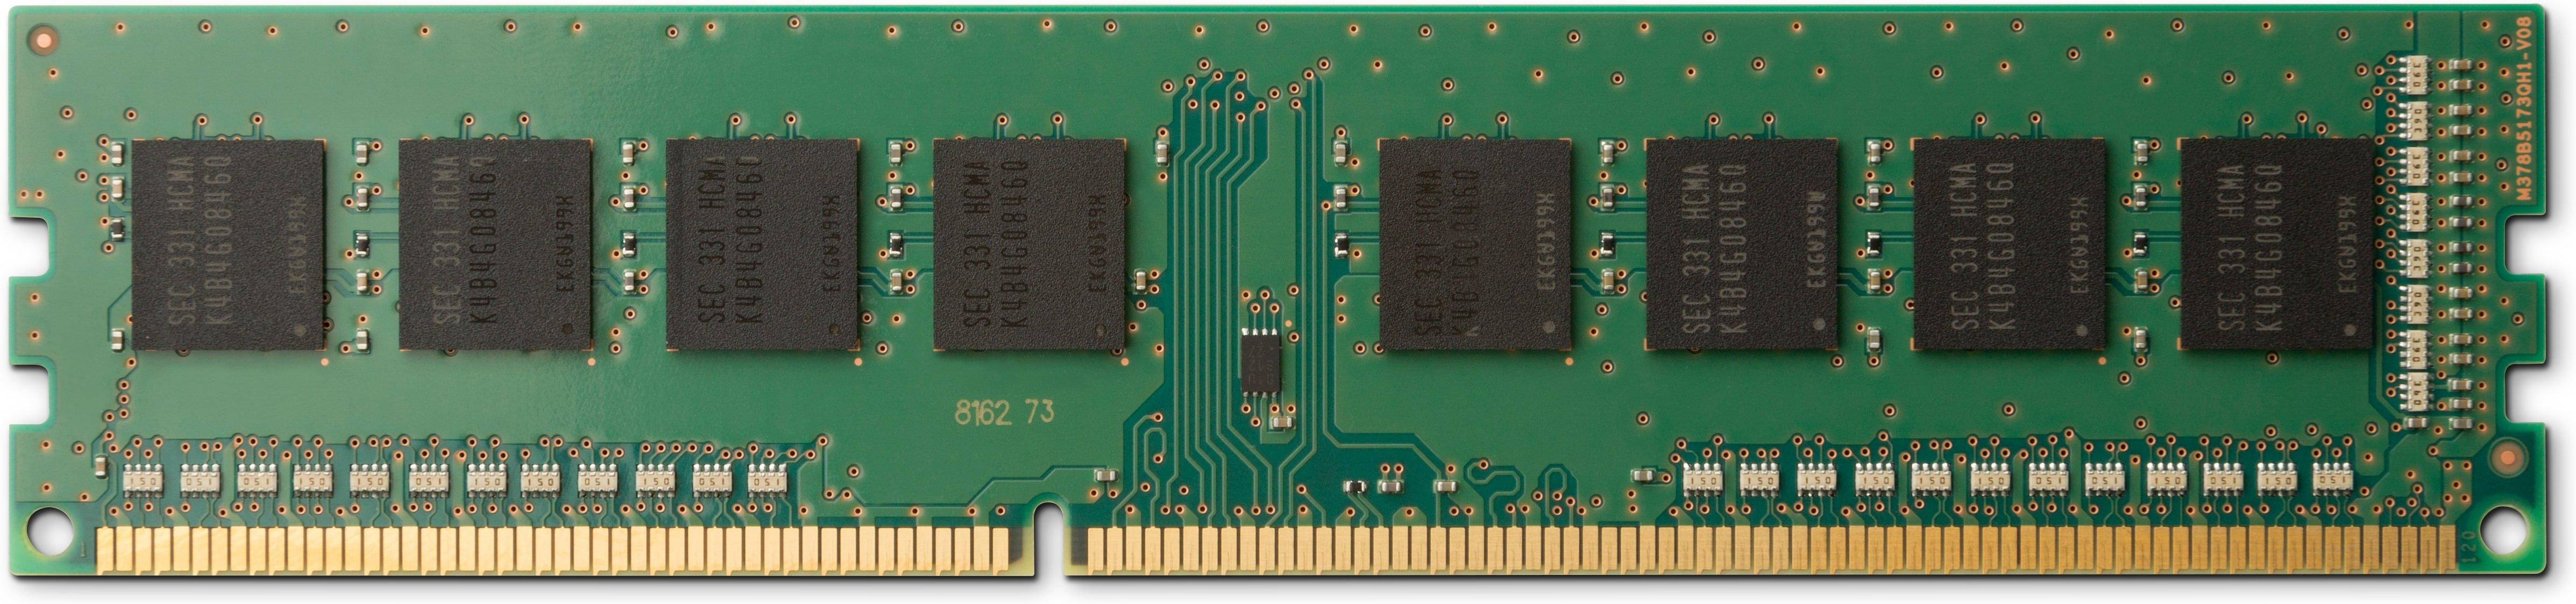 Hewlett-Packard  DDR4-3200, UDIMM 